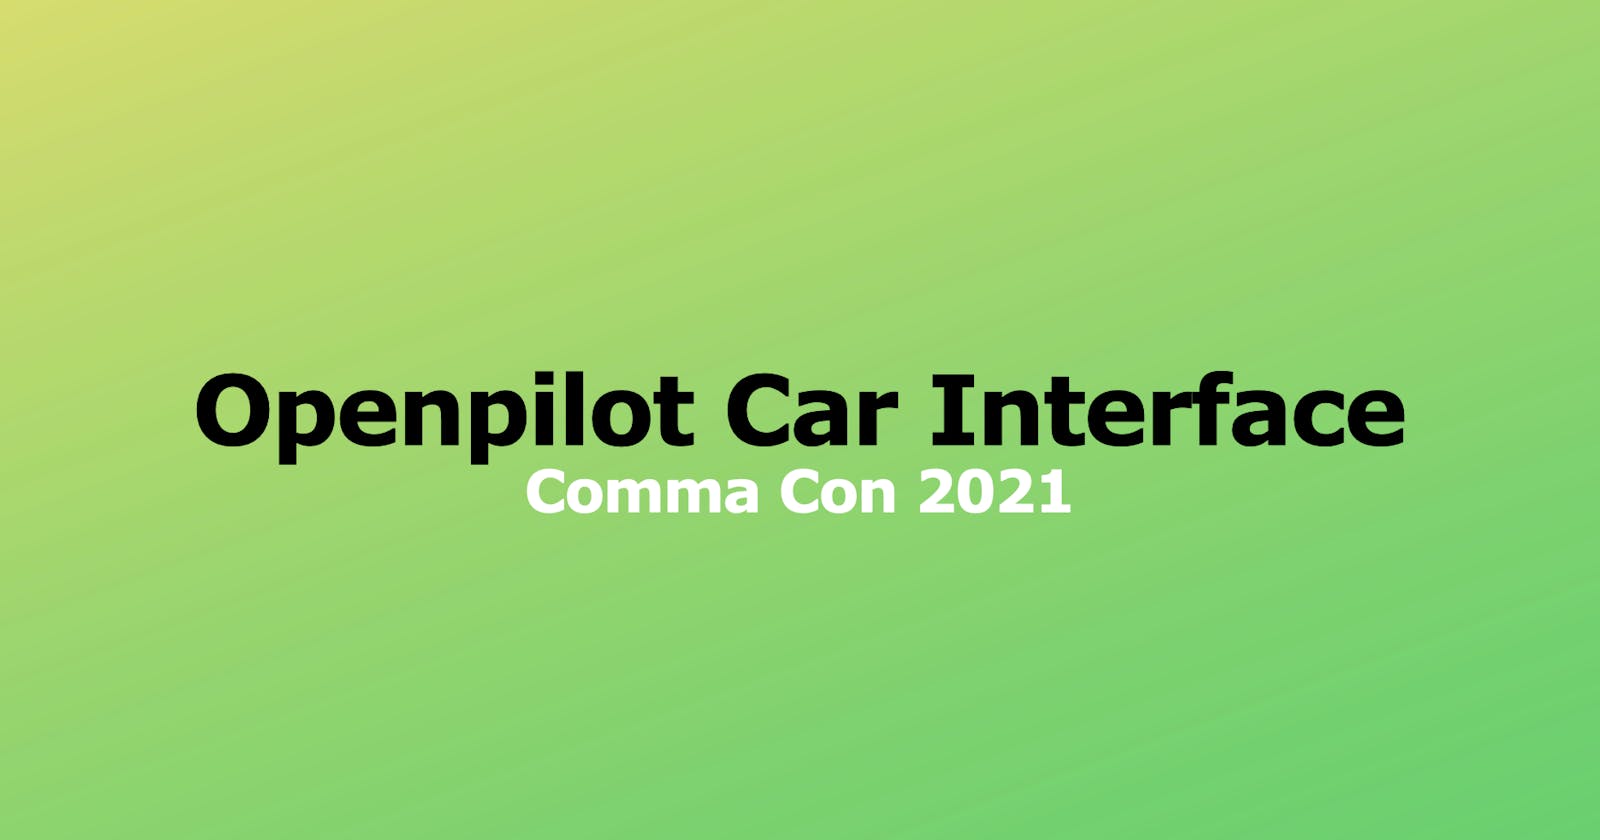 How does openpilot control a car?